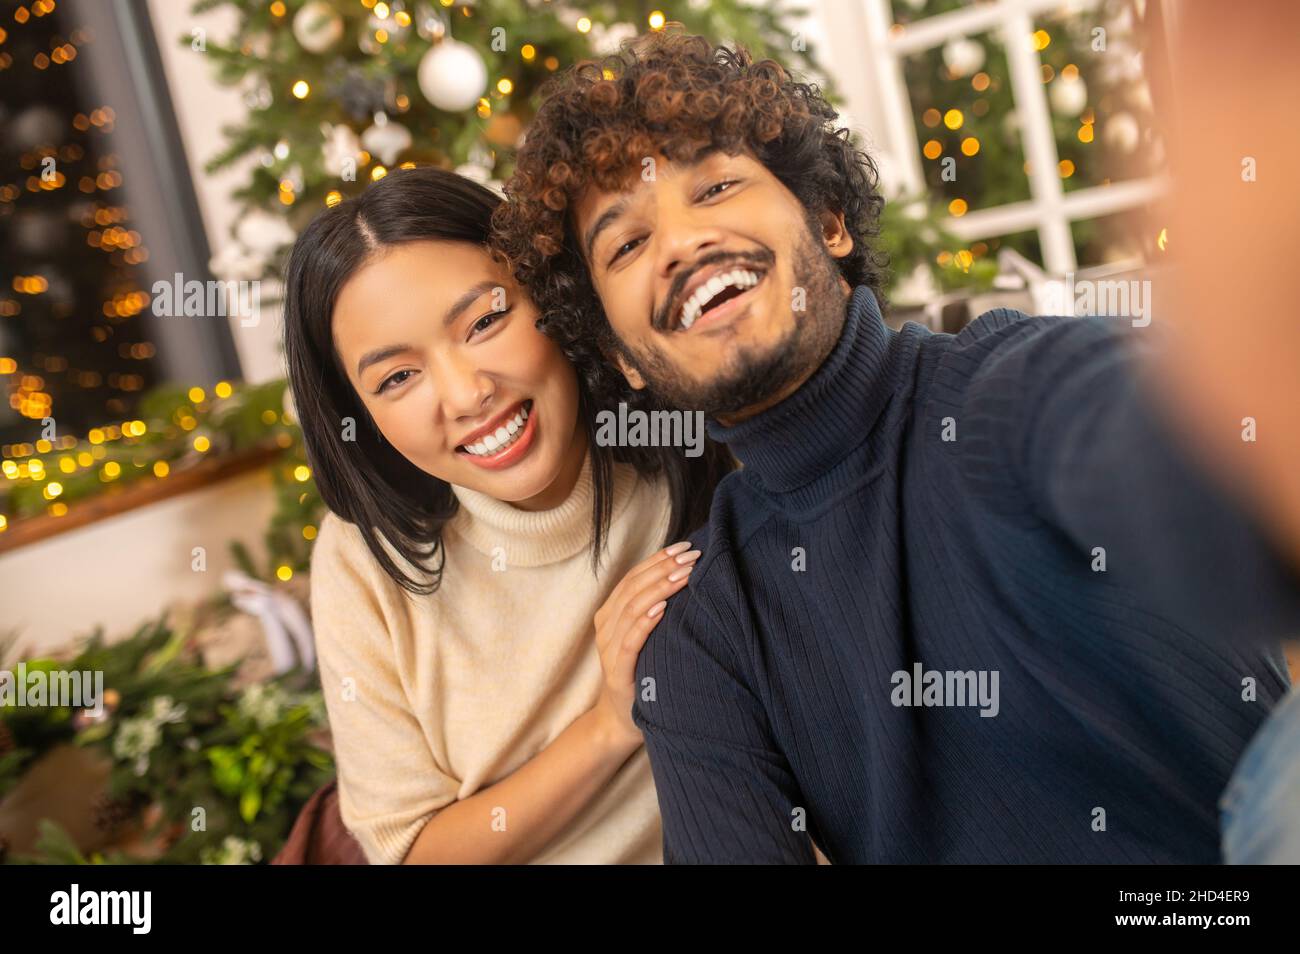 Close-up man and woman smiling at camera Stock Photo